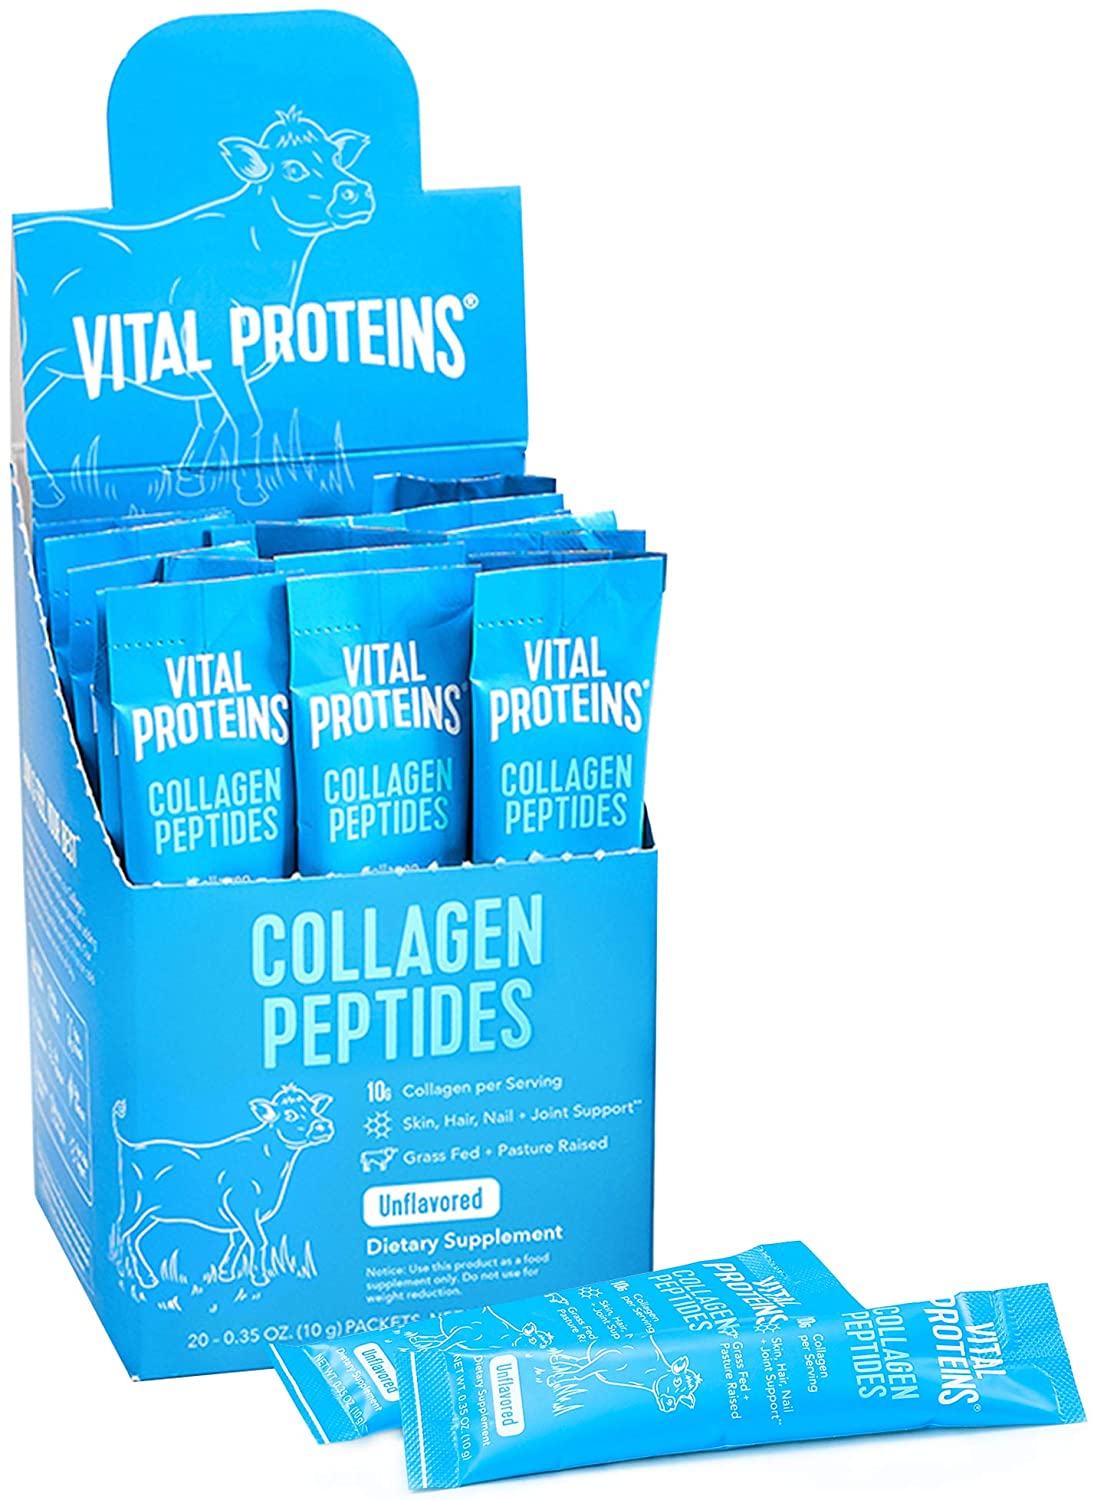 Vital Proteins Collagen Peptides Powder Supplement - 20 Paket